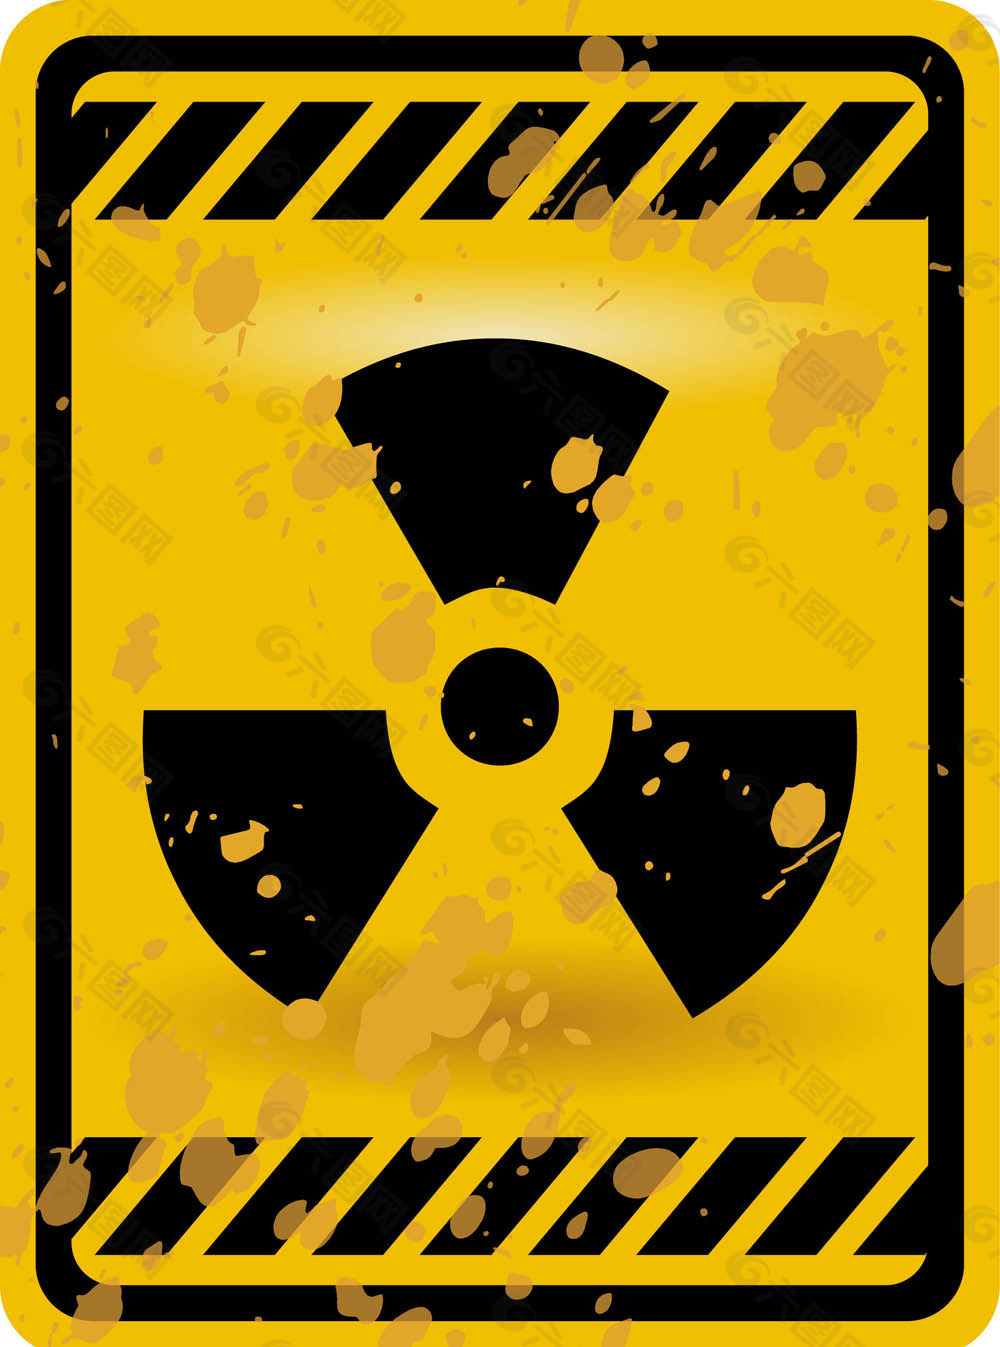 核警告标志03矢量